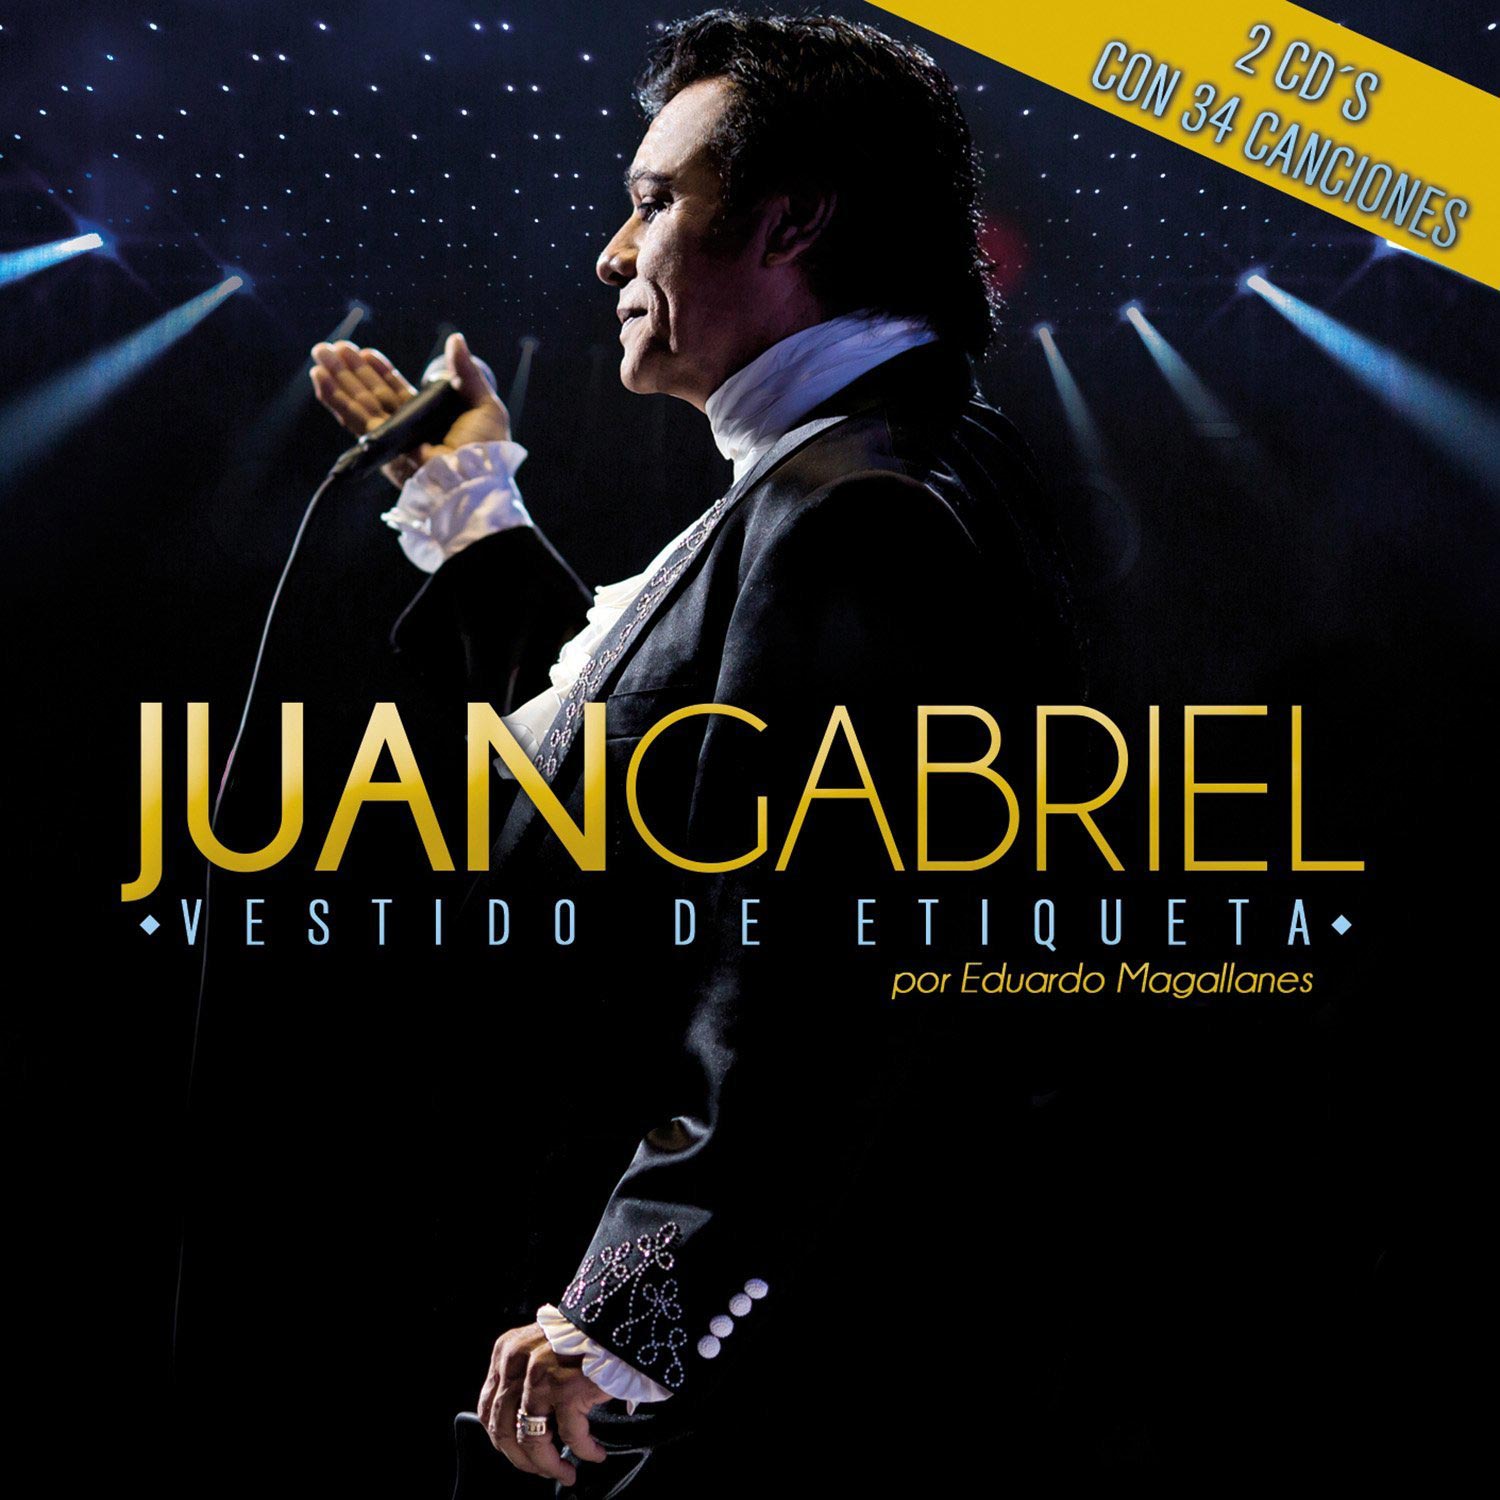 Juan Gabriel: Vestido de etiqueta por Eduardo Magallanes, la portada del  disco